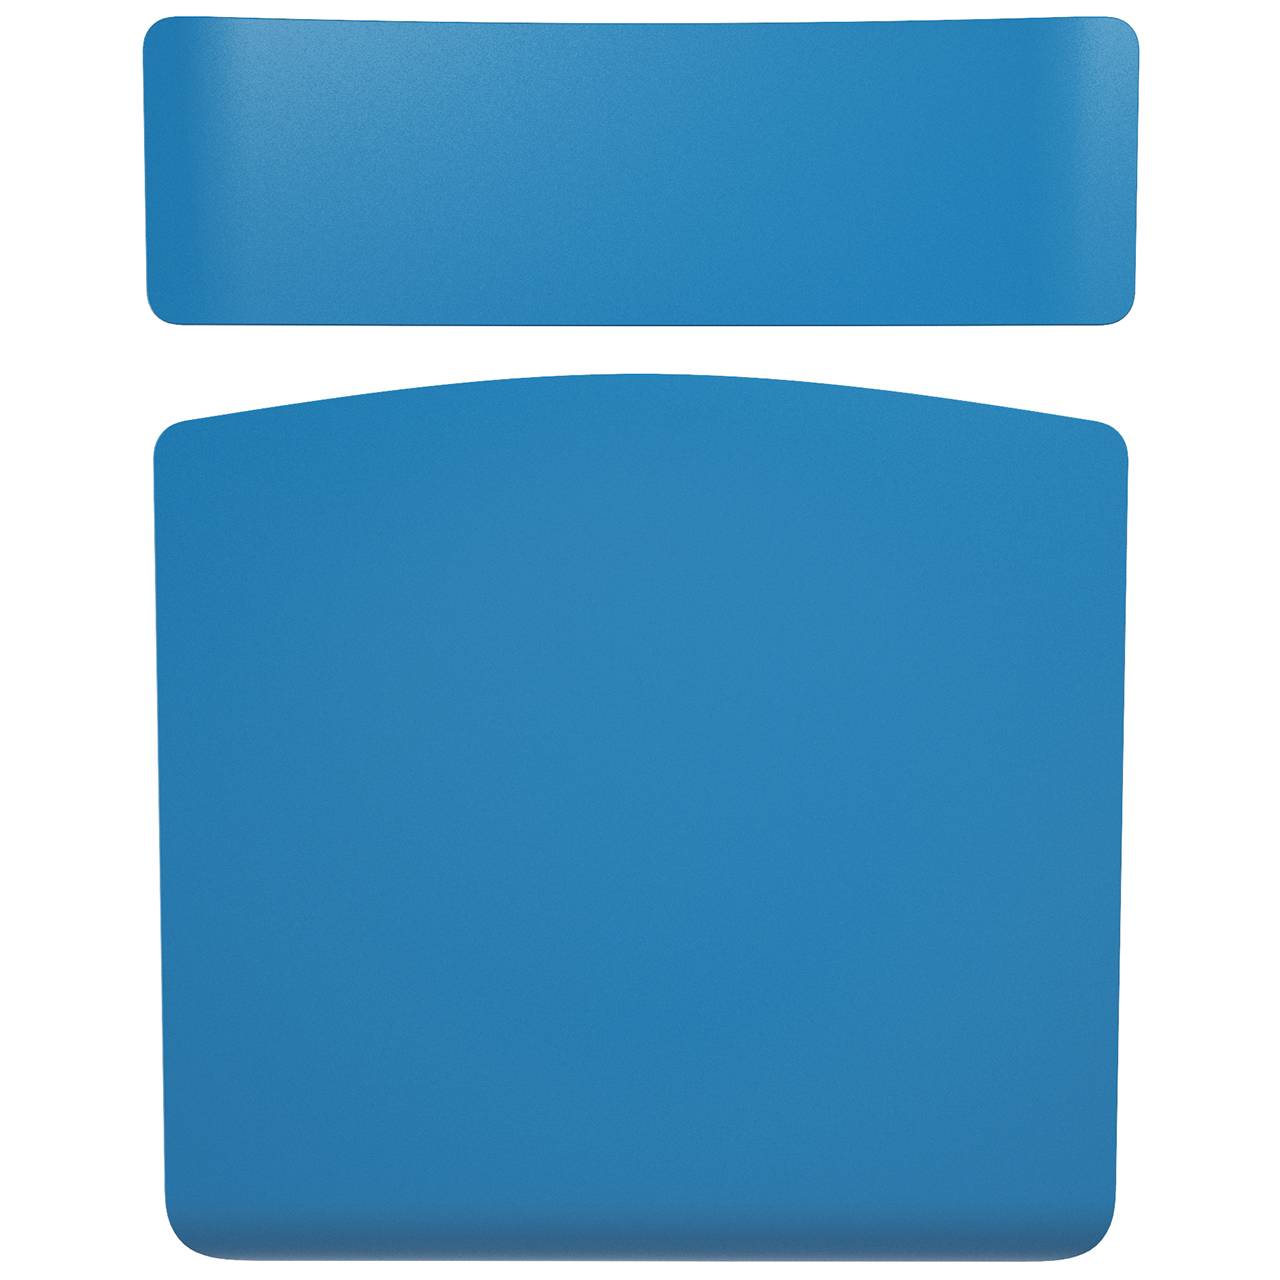 Стул ученический регулируемый (гр. 2-4, 3-5, 4-6 или 5-7) серый Синий 3-5 прямоугольная